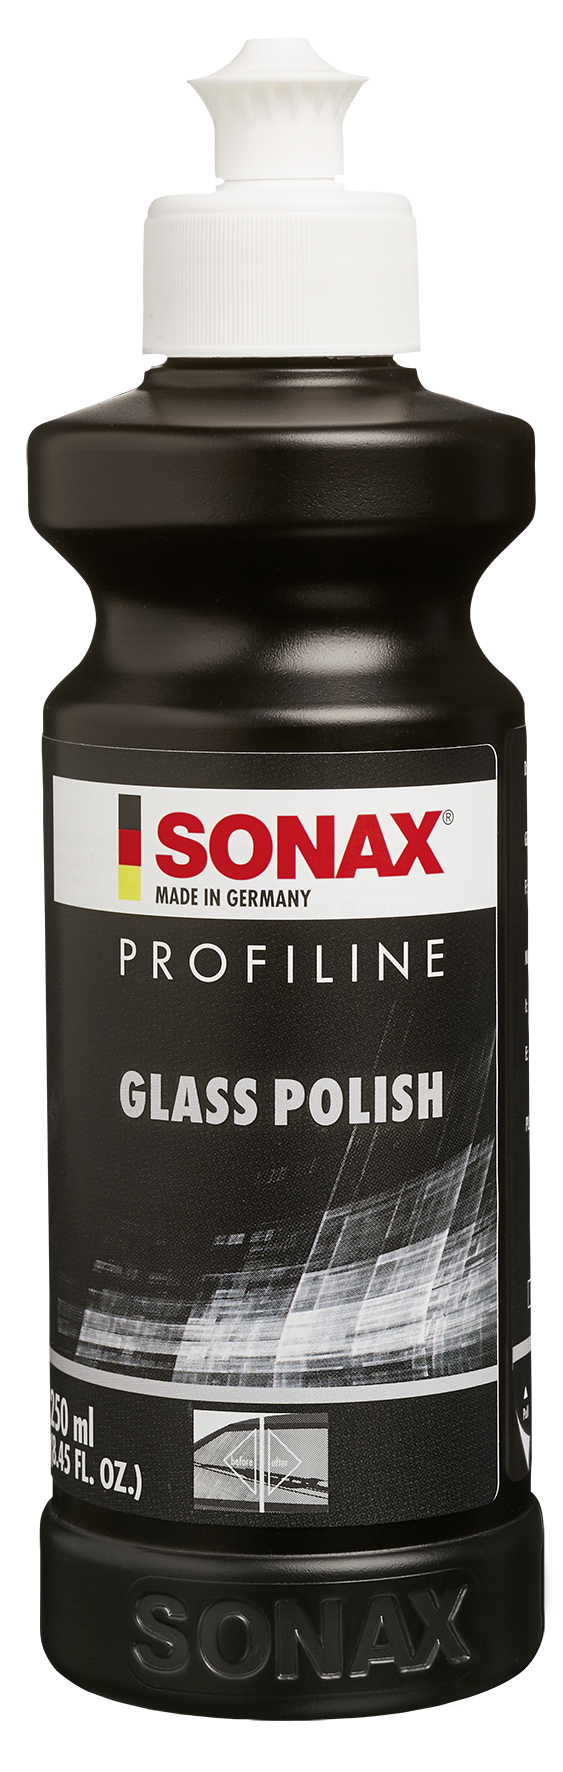 پولیش شیشه سوناکس SONAX PROFILINE